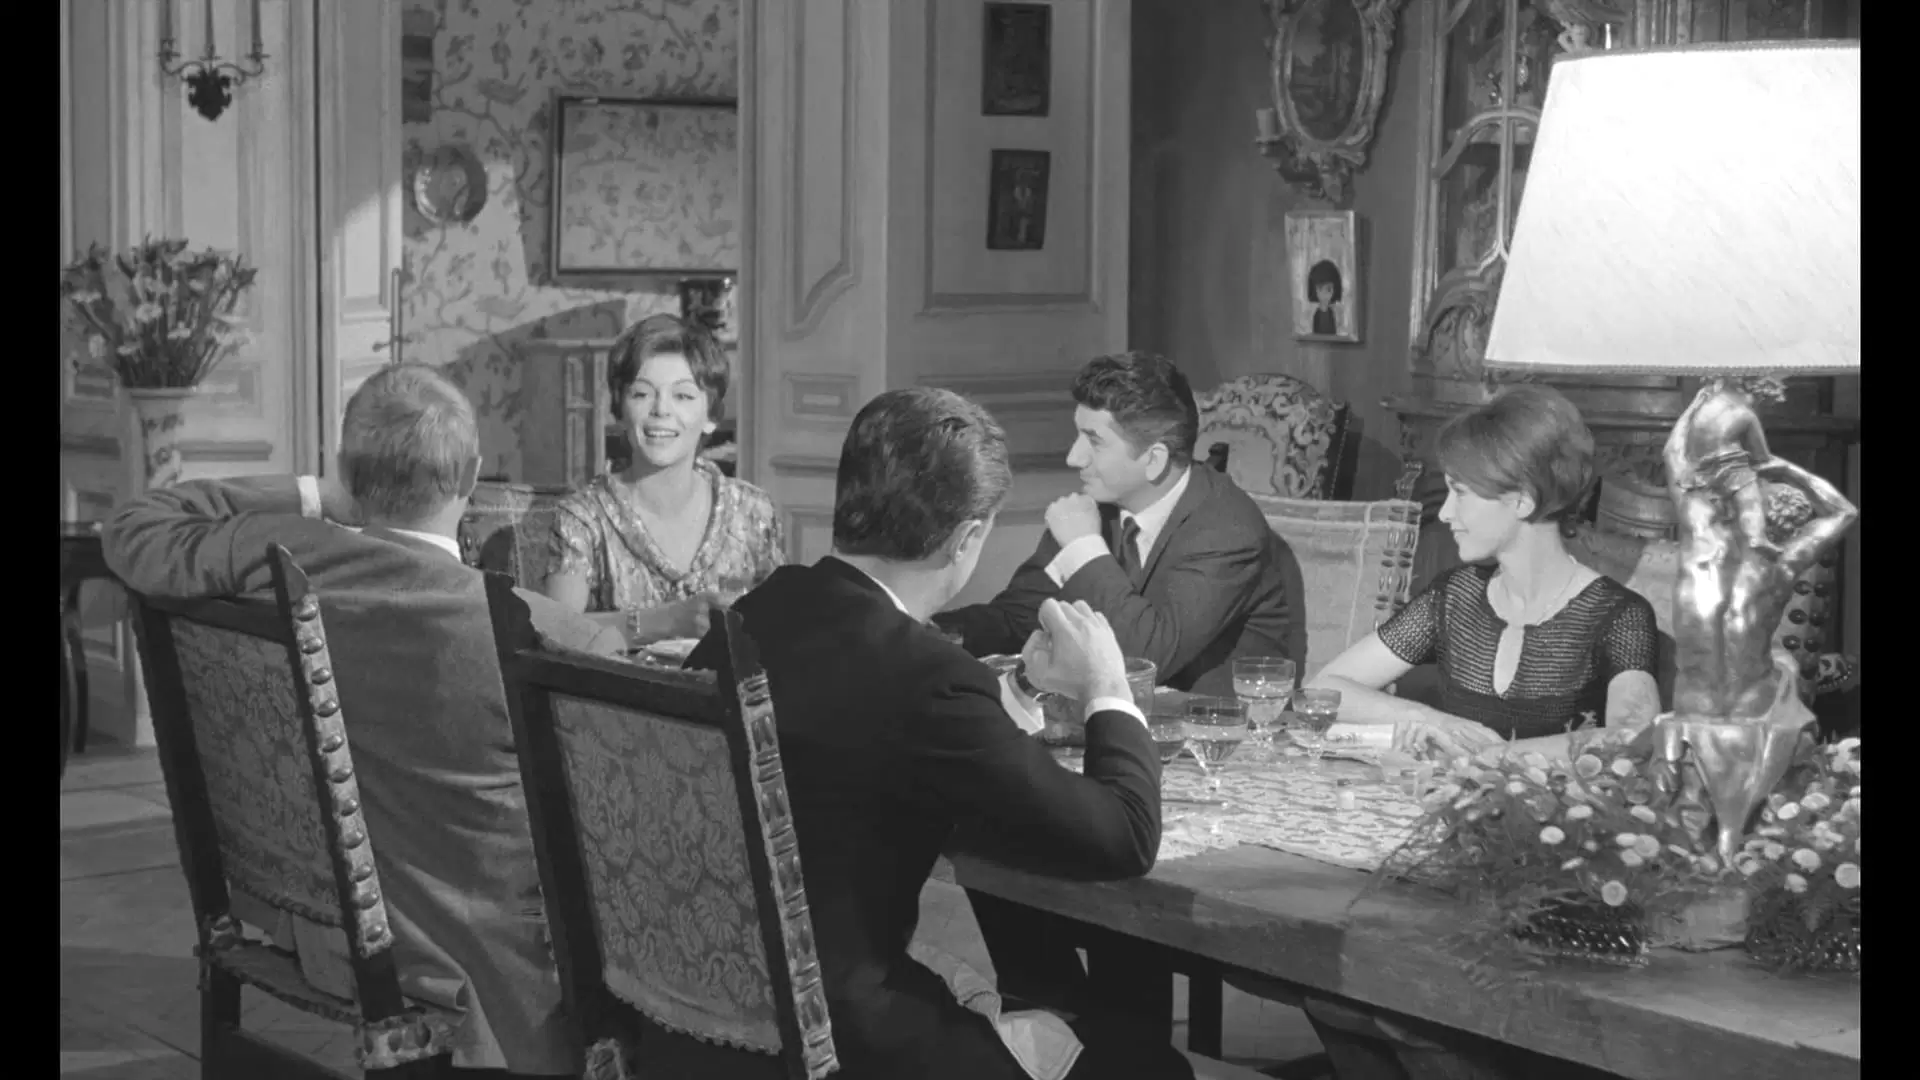 دانلود فیلم La morte-saison des amours 1961